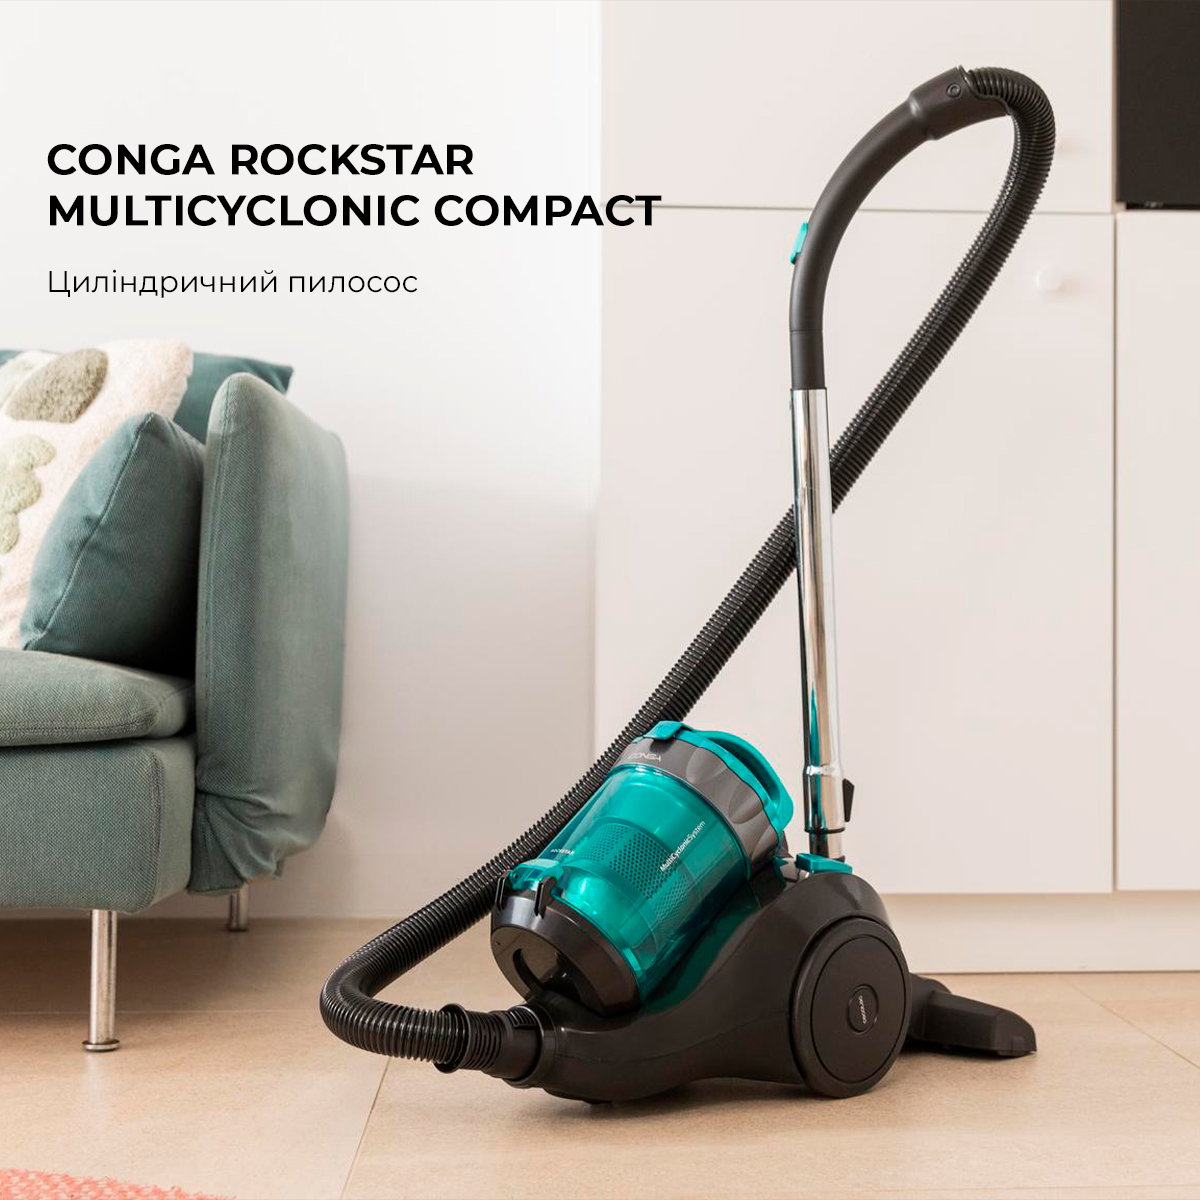 Моющий пылесос Cecotec Conga Rockstar Wet & Dry Compact Plus (CCTC-08112) –  фото, отзывы, характеристики в интернет-магазине ROZETKA от продавца:  Mostly Sunny